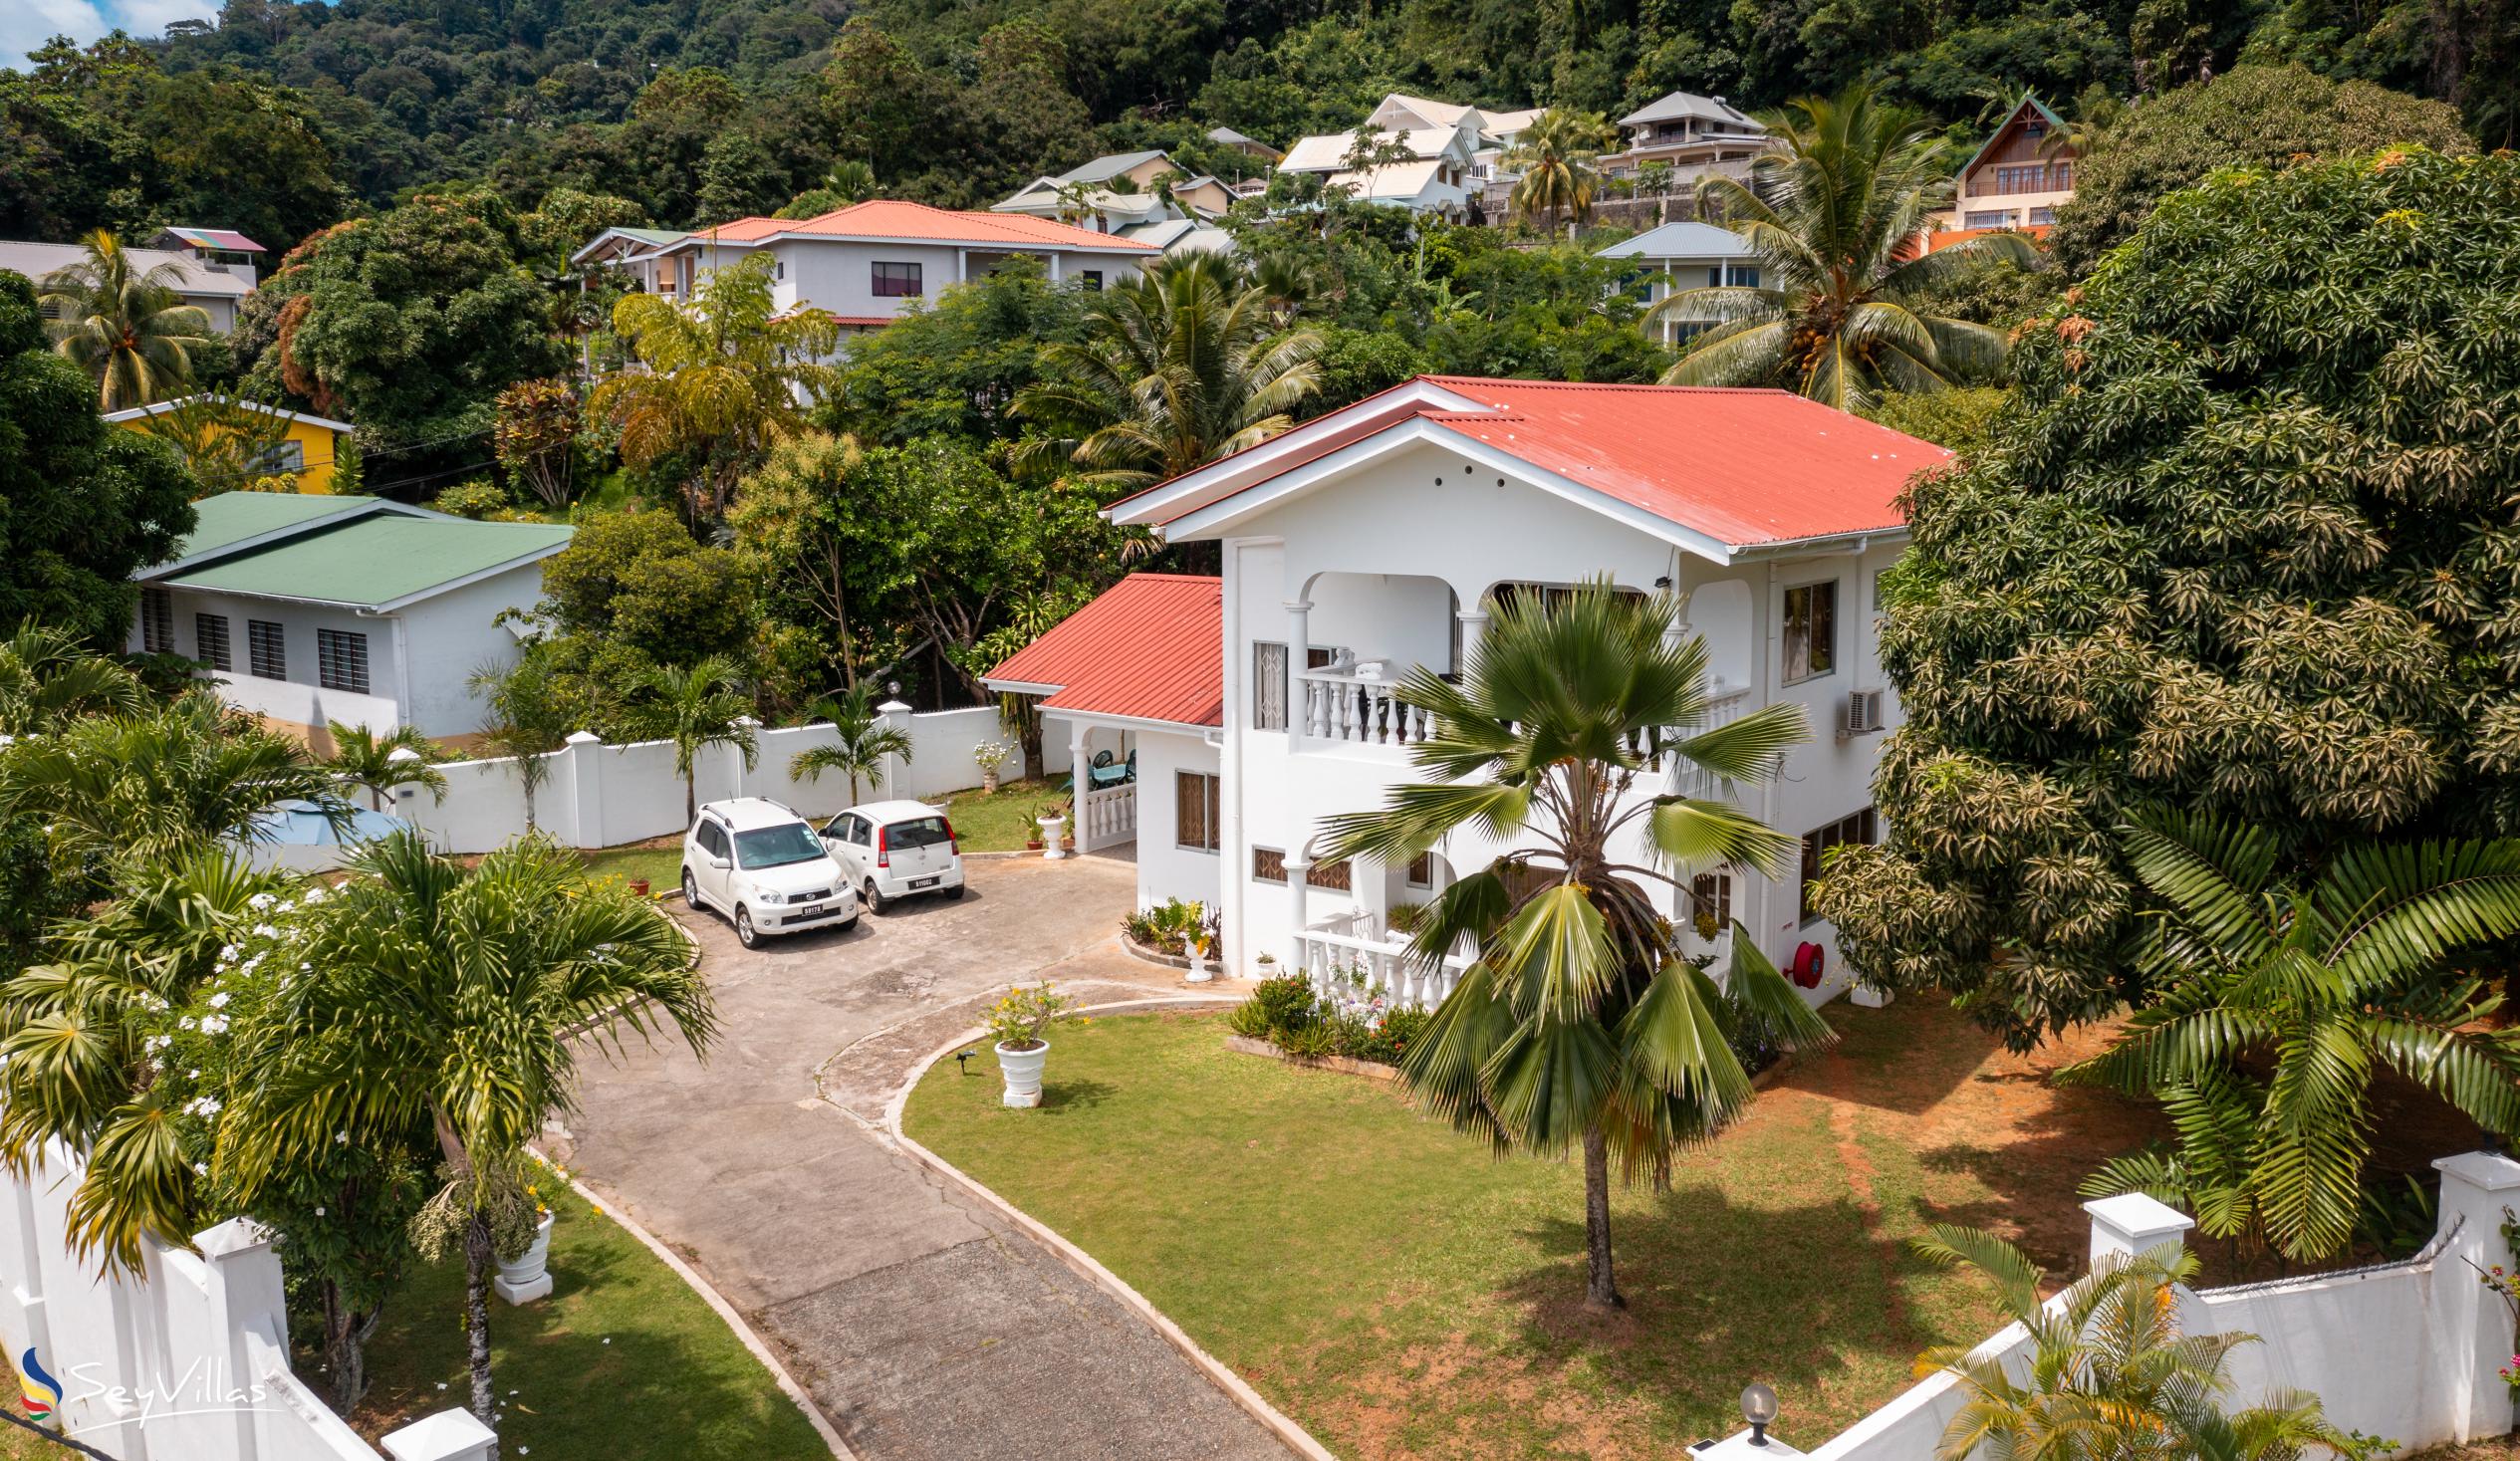 Foto 4: Villa Verde - Aussenbereich - Mahé (Seychellen)